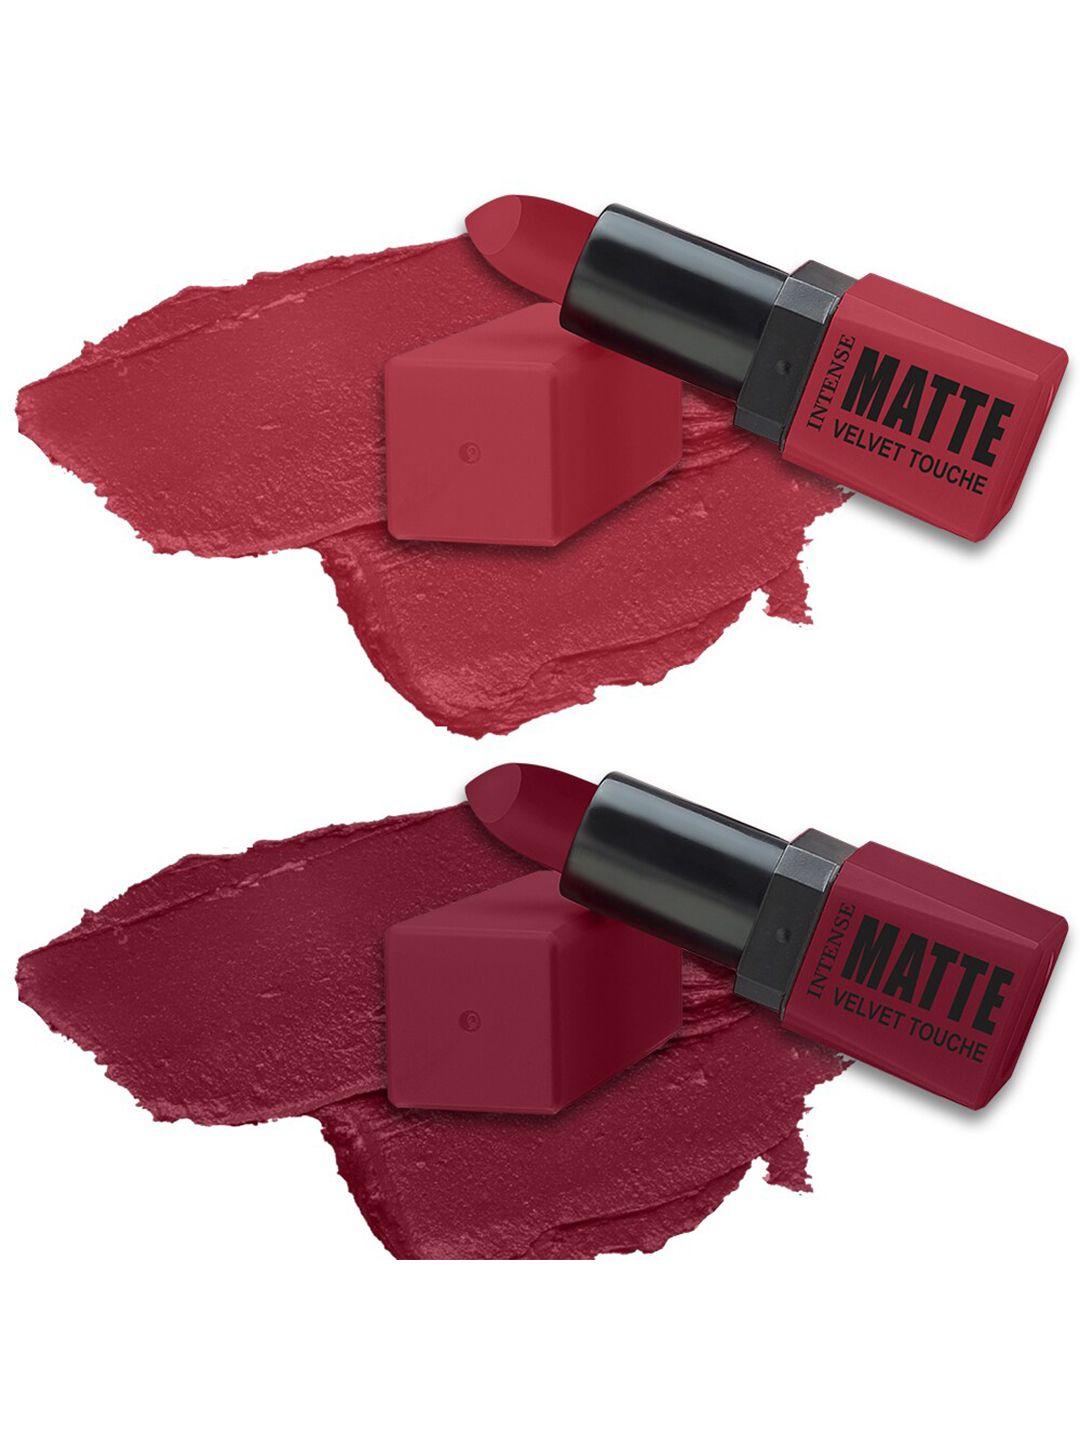 forsure-set-of-2-long-lasting-smooth-intense-matte-velvet-touche-lipstick---3.5g-each